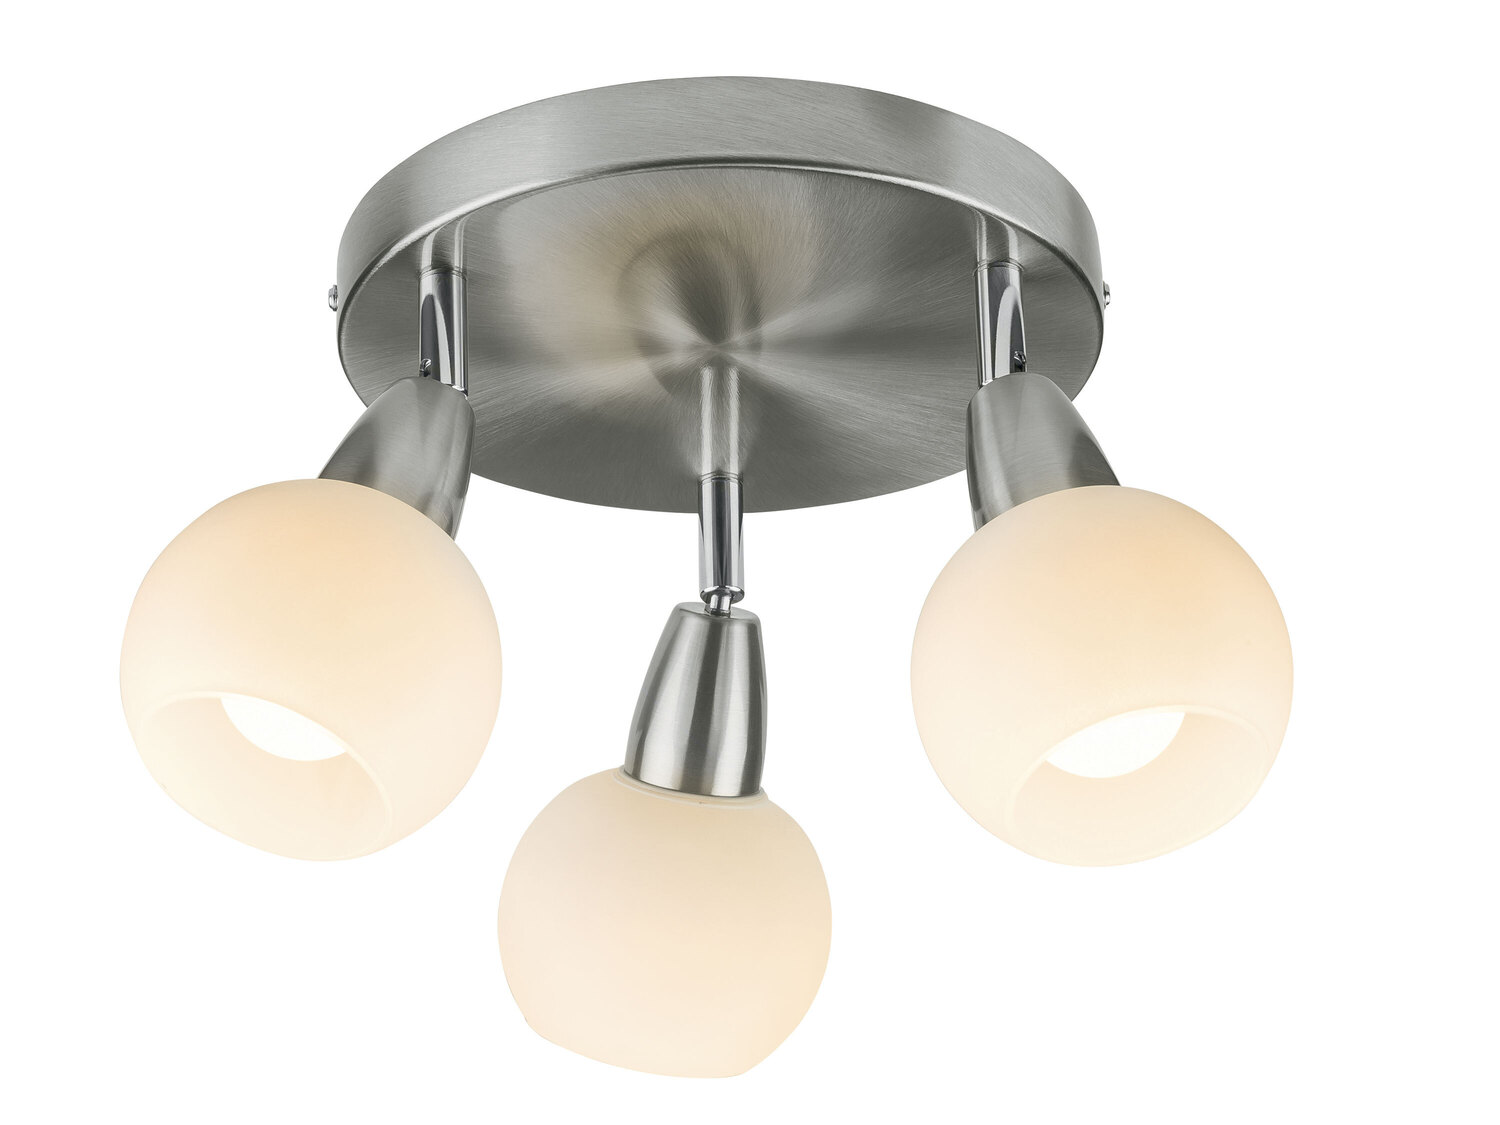 Lampa sufitowa LED Livarno, cena 69,90 PLN 
- o wyglądzie matowego niklu
- klosze ...